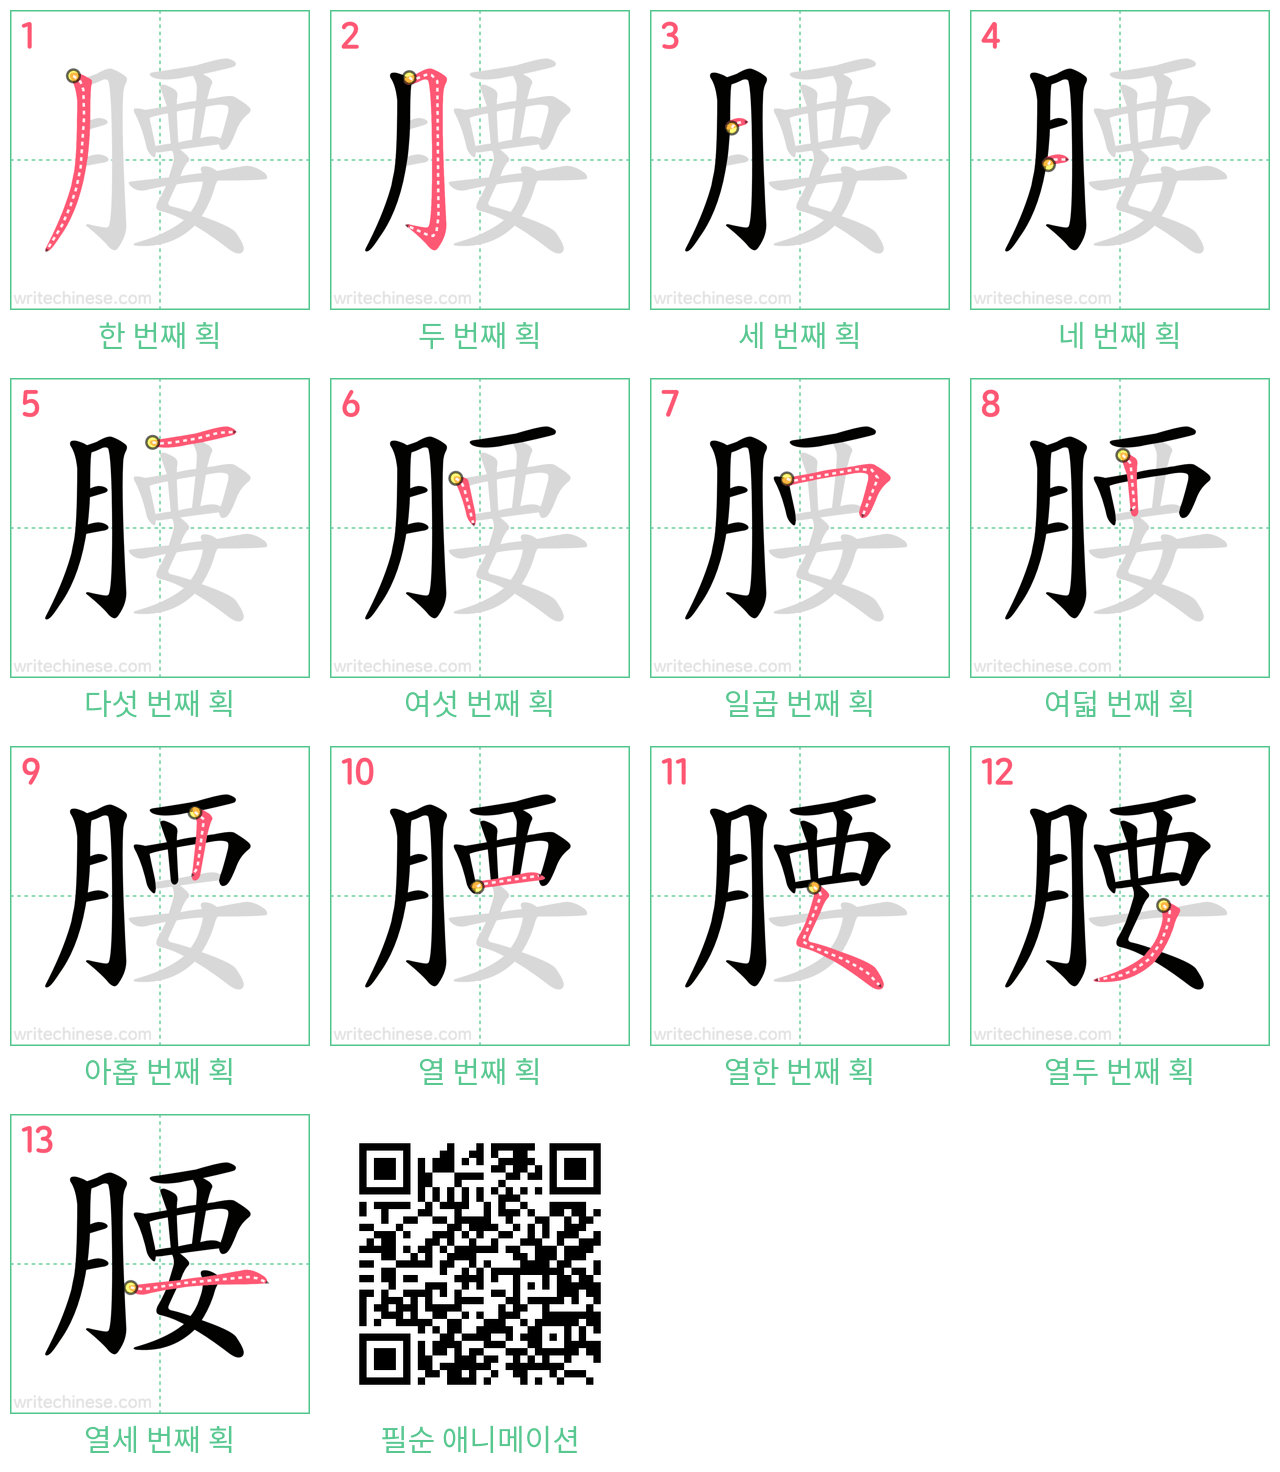 腰 step-by-step stroke order diagrams